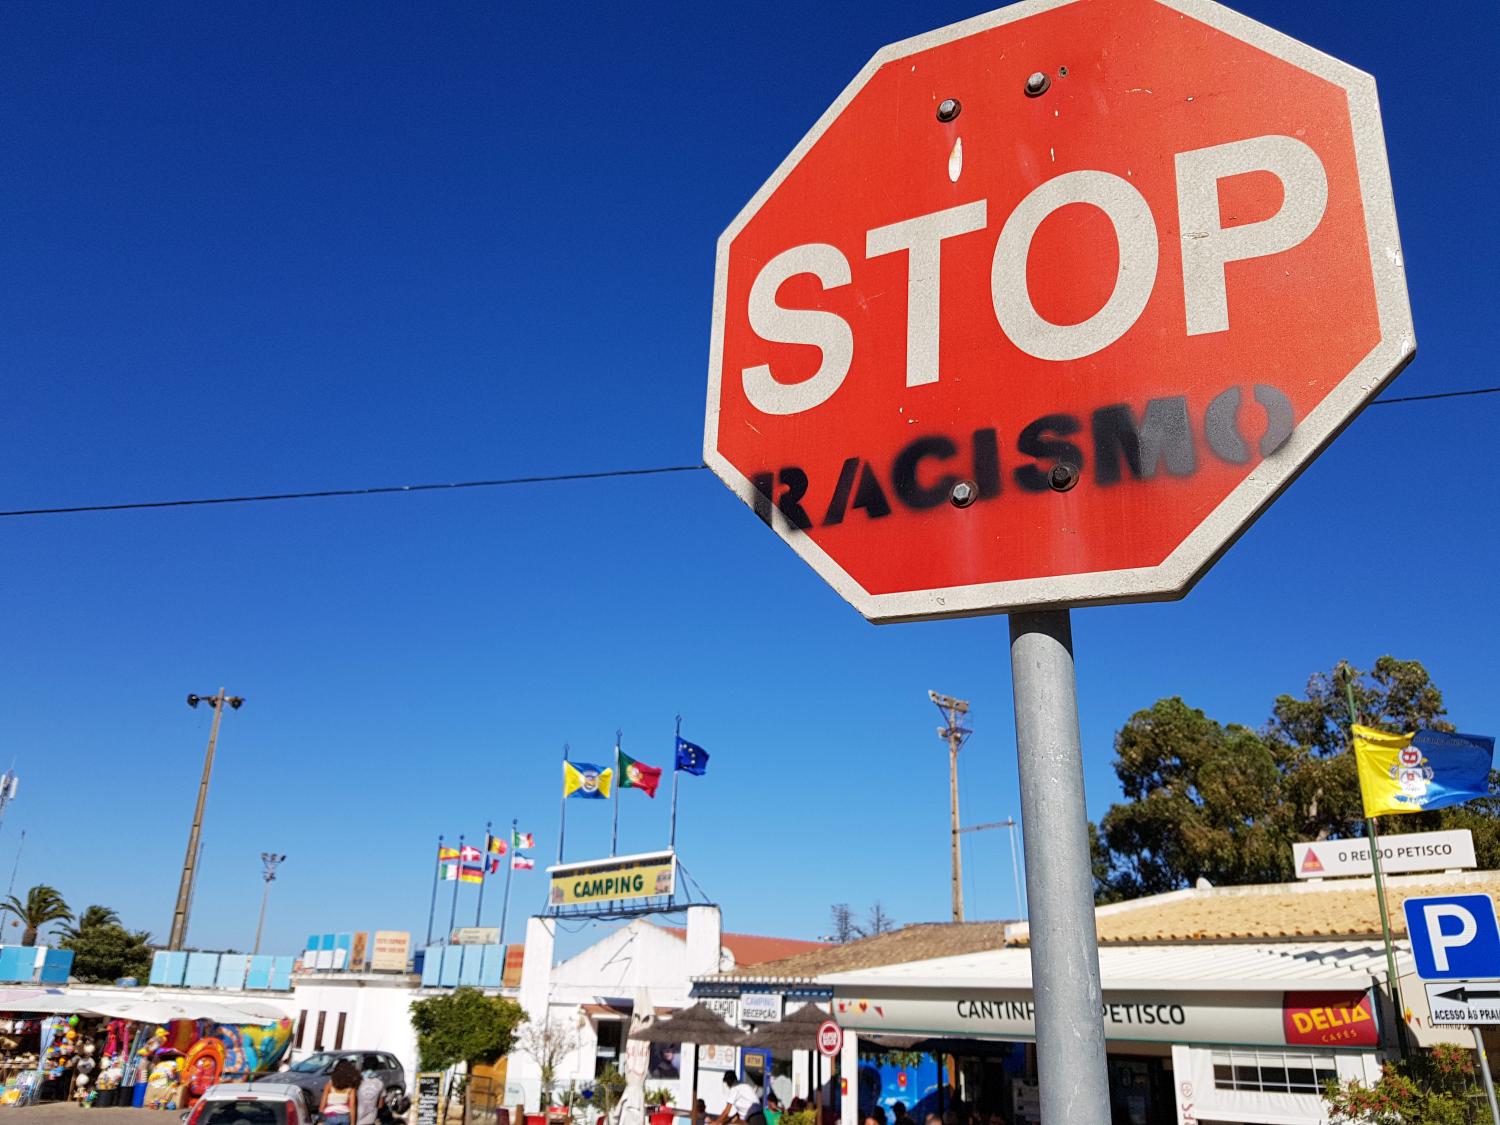 stop racismo (c) Bild: Peter Weidemann In: Pfarrbriefservice.de